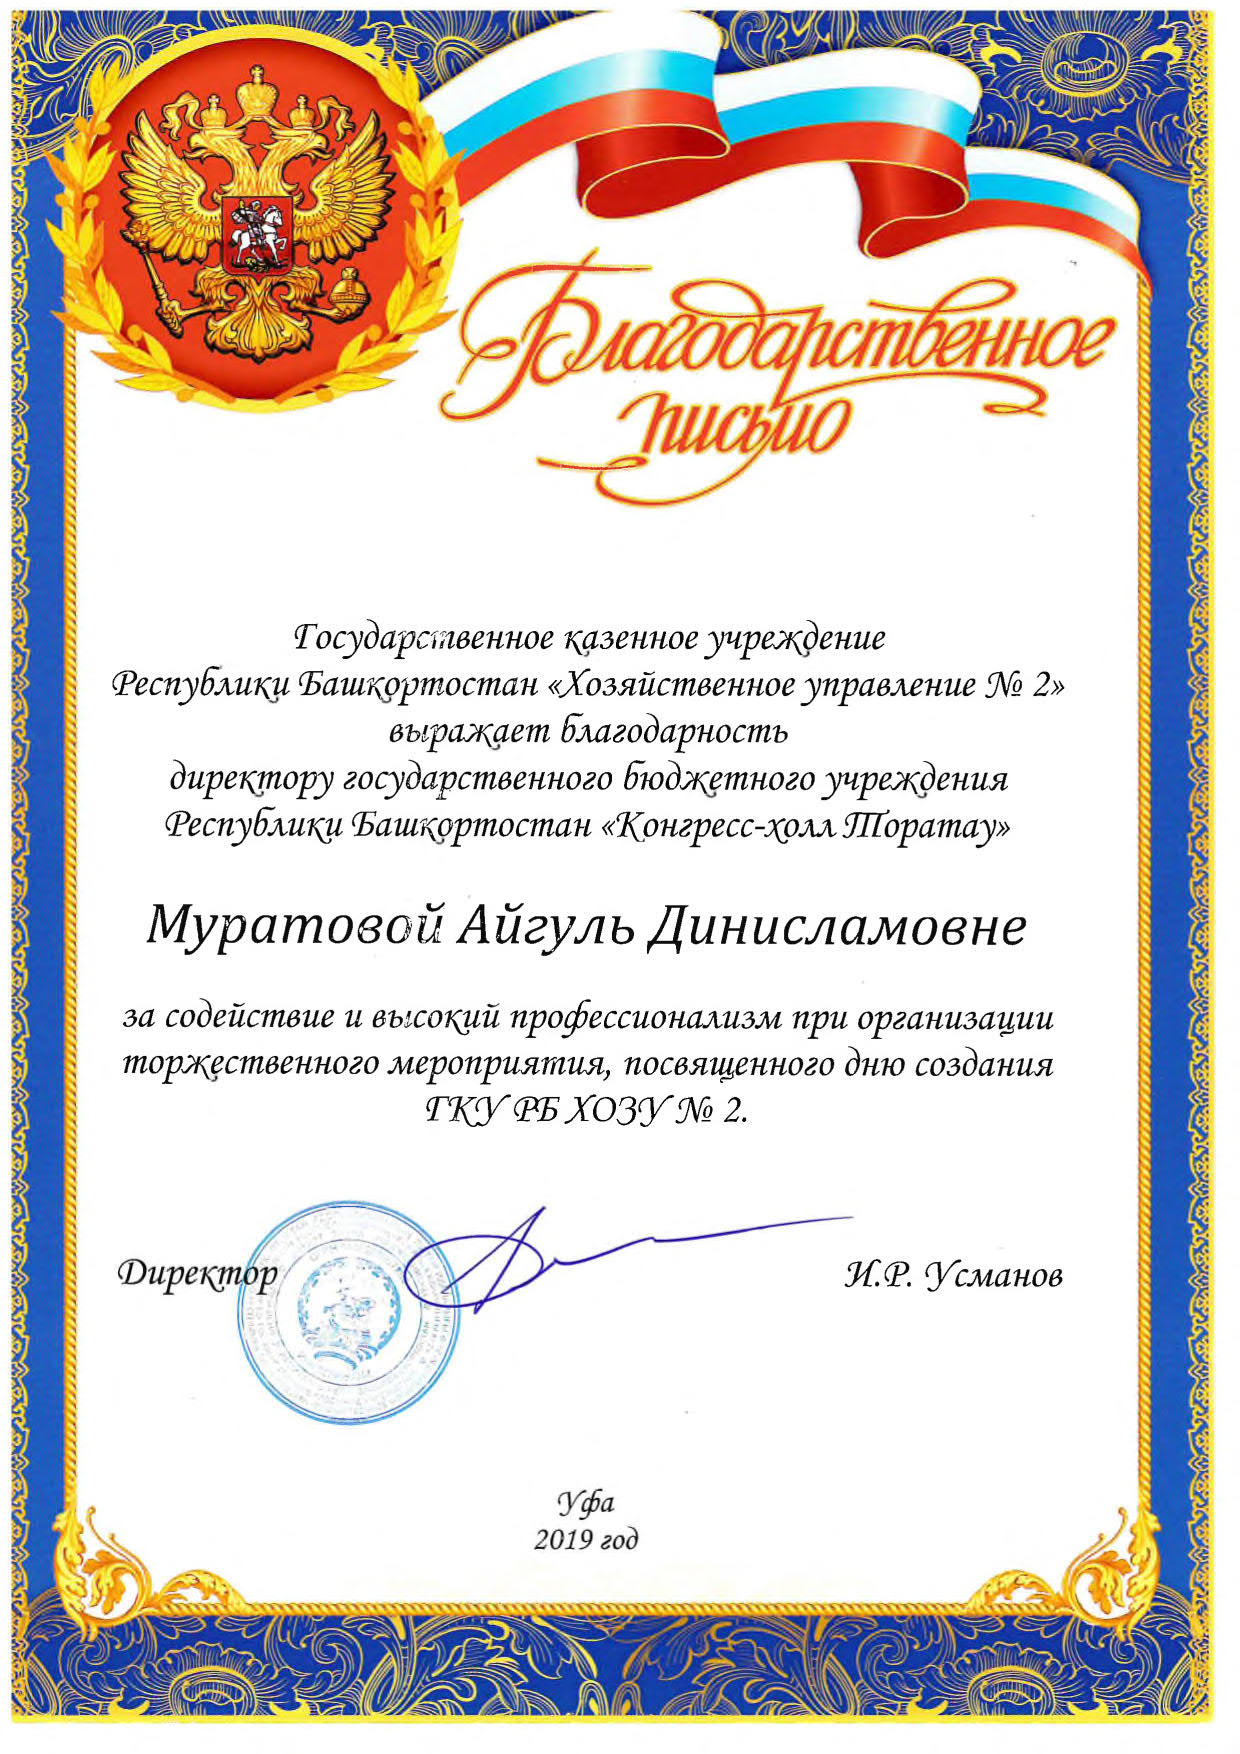 Благодарственное письмо от ГКУ РБ" Хозяйственное управление №2"